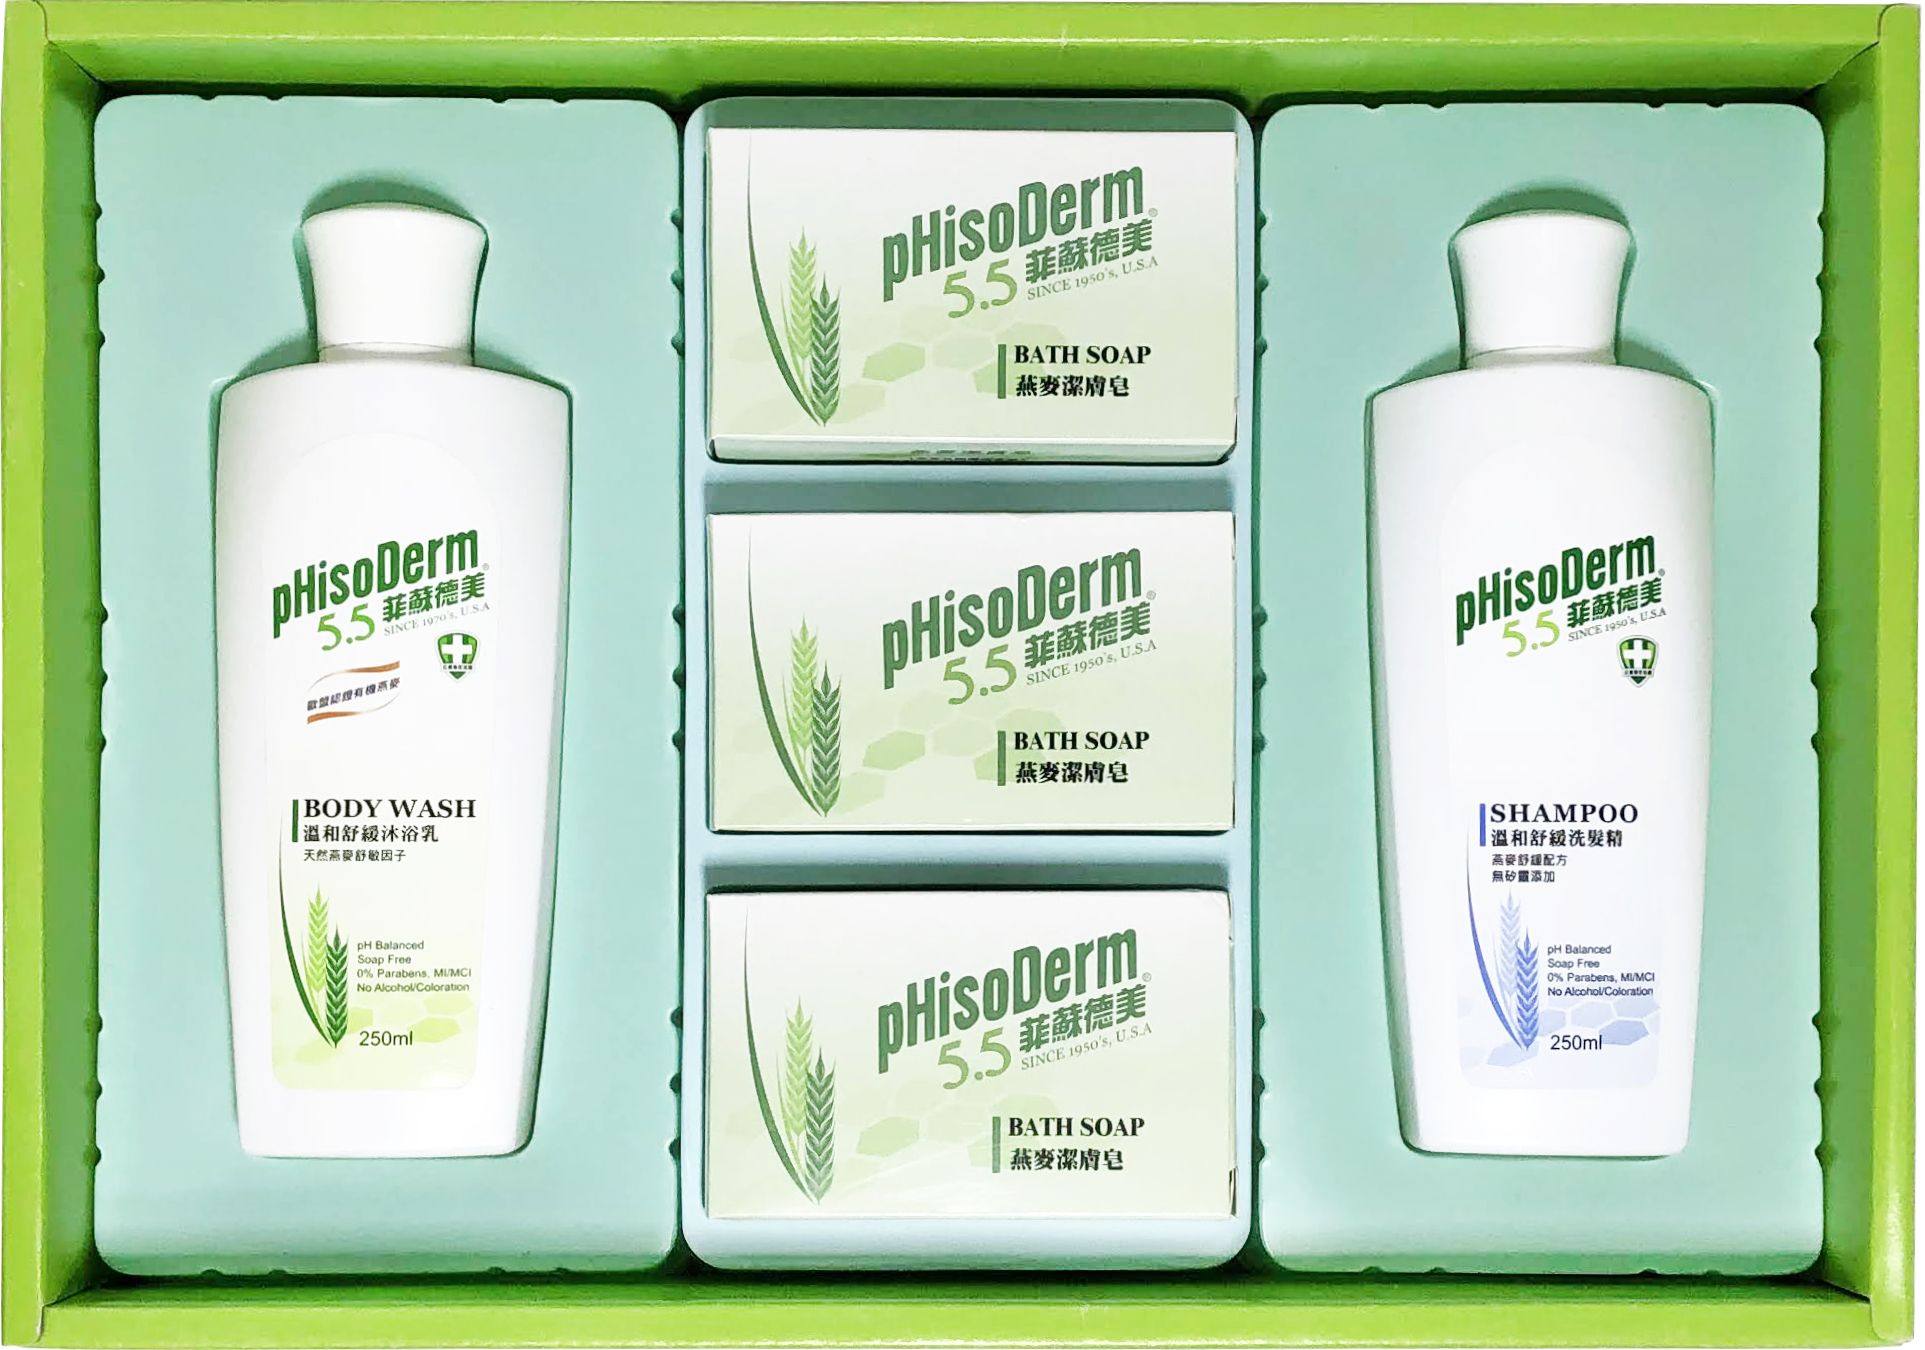 菲蘇德美清潔禮盒-燕麥潔膚皂80g+溫和舒緩洗髮精250ml+溫和舒緩沐浴乳250ml